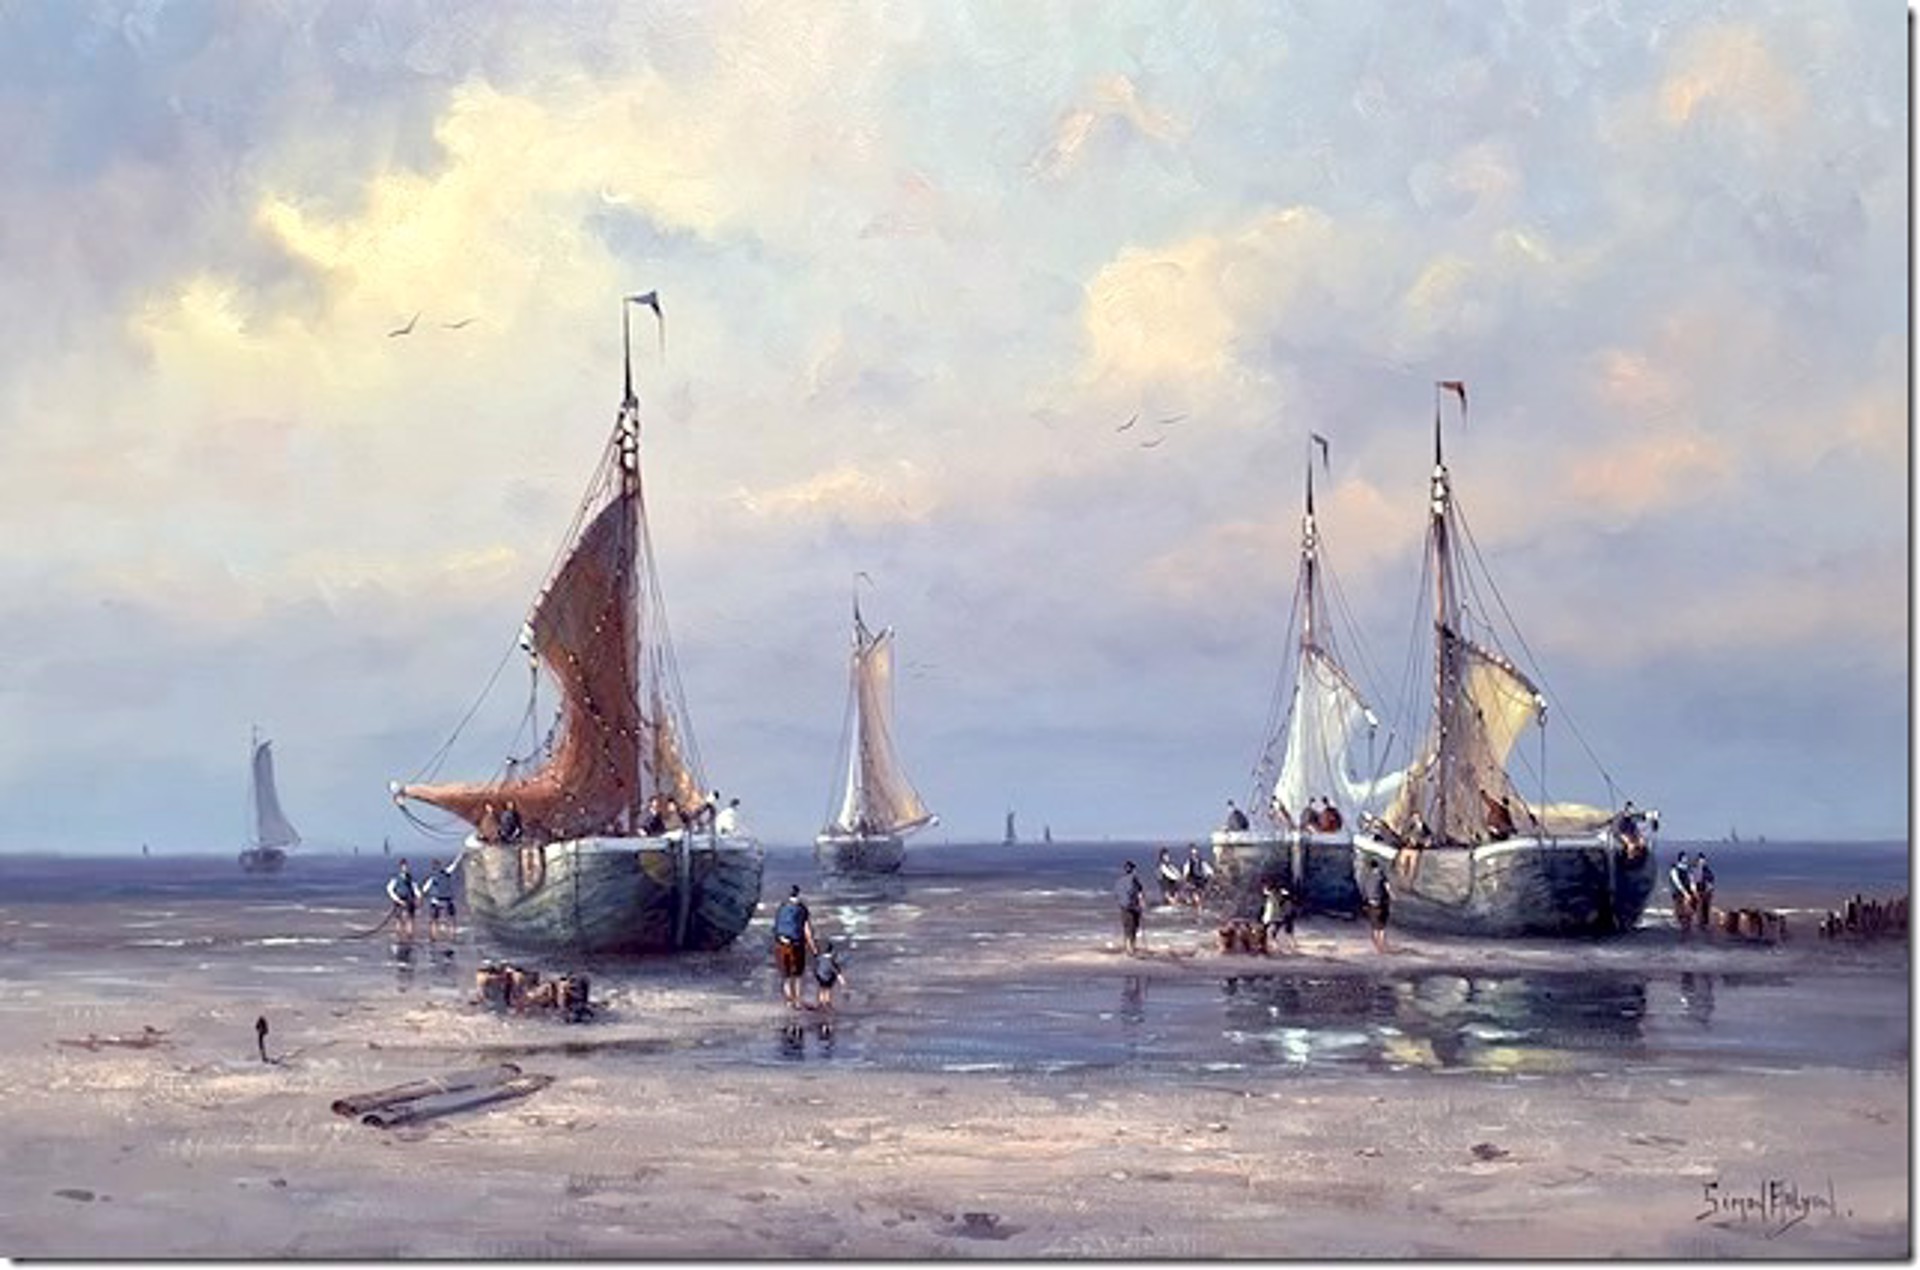 Hardworking on the Dutch Coastline by Simon Balyon